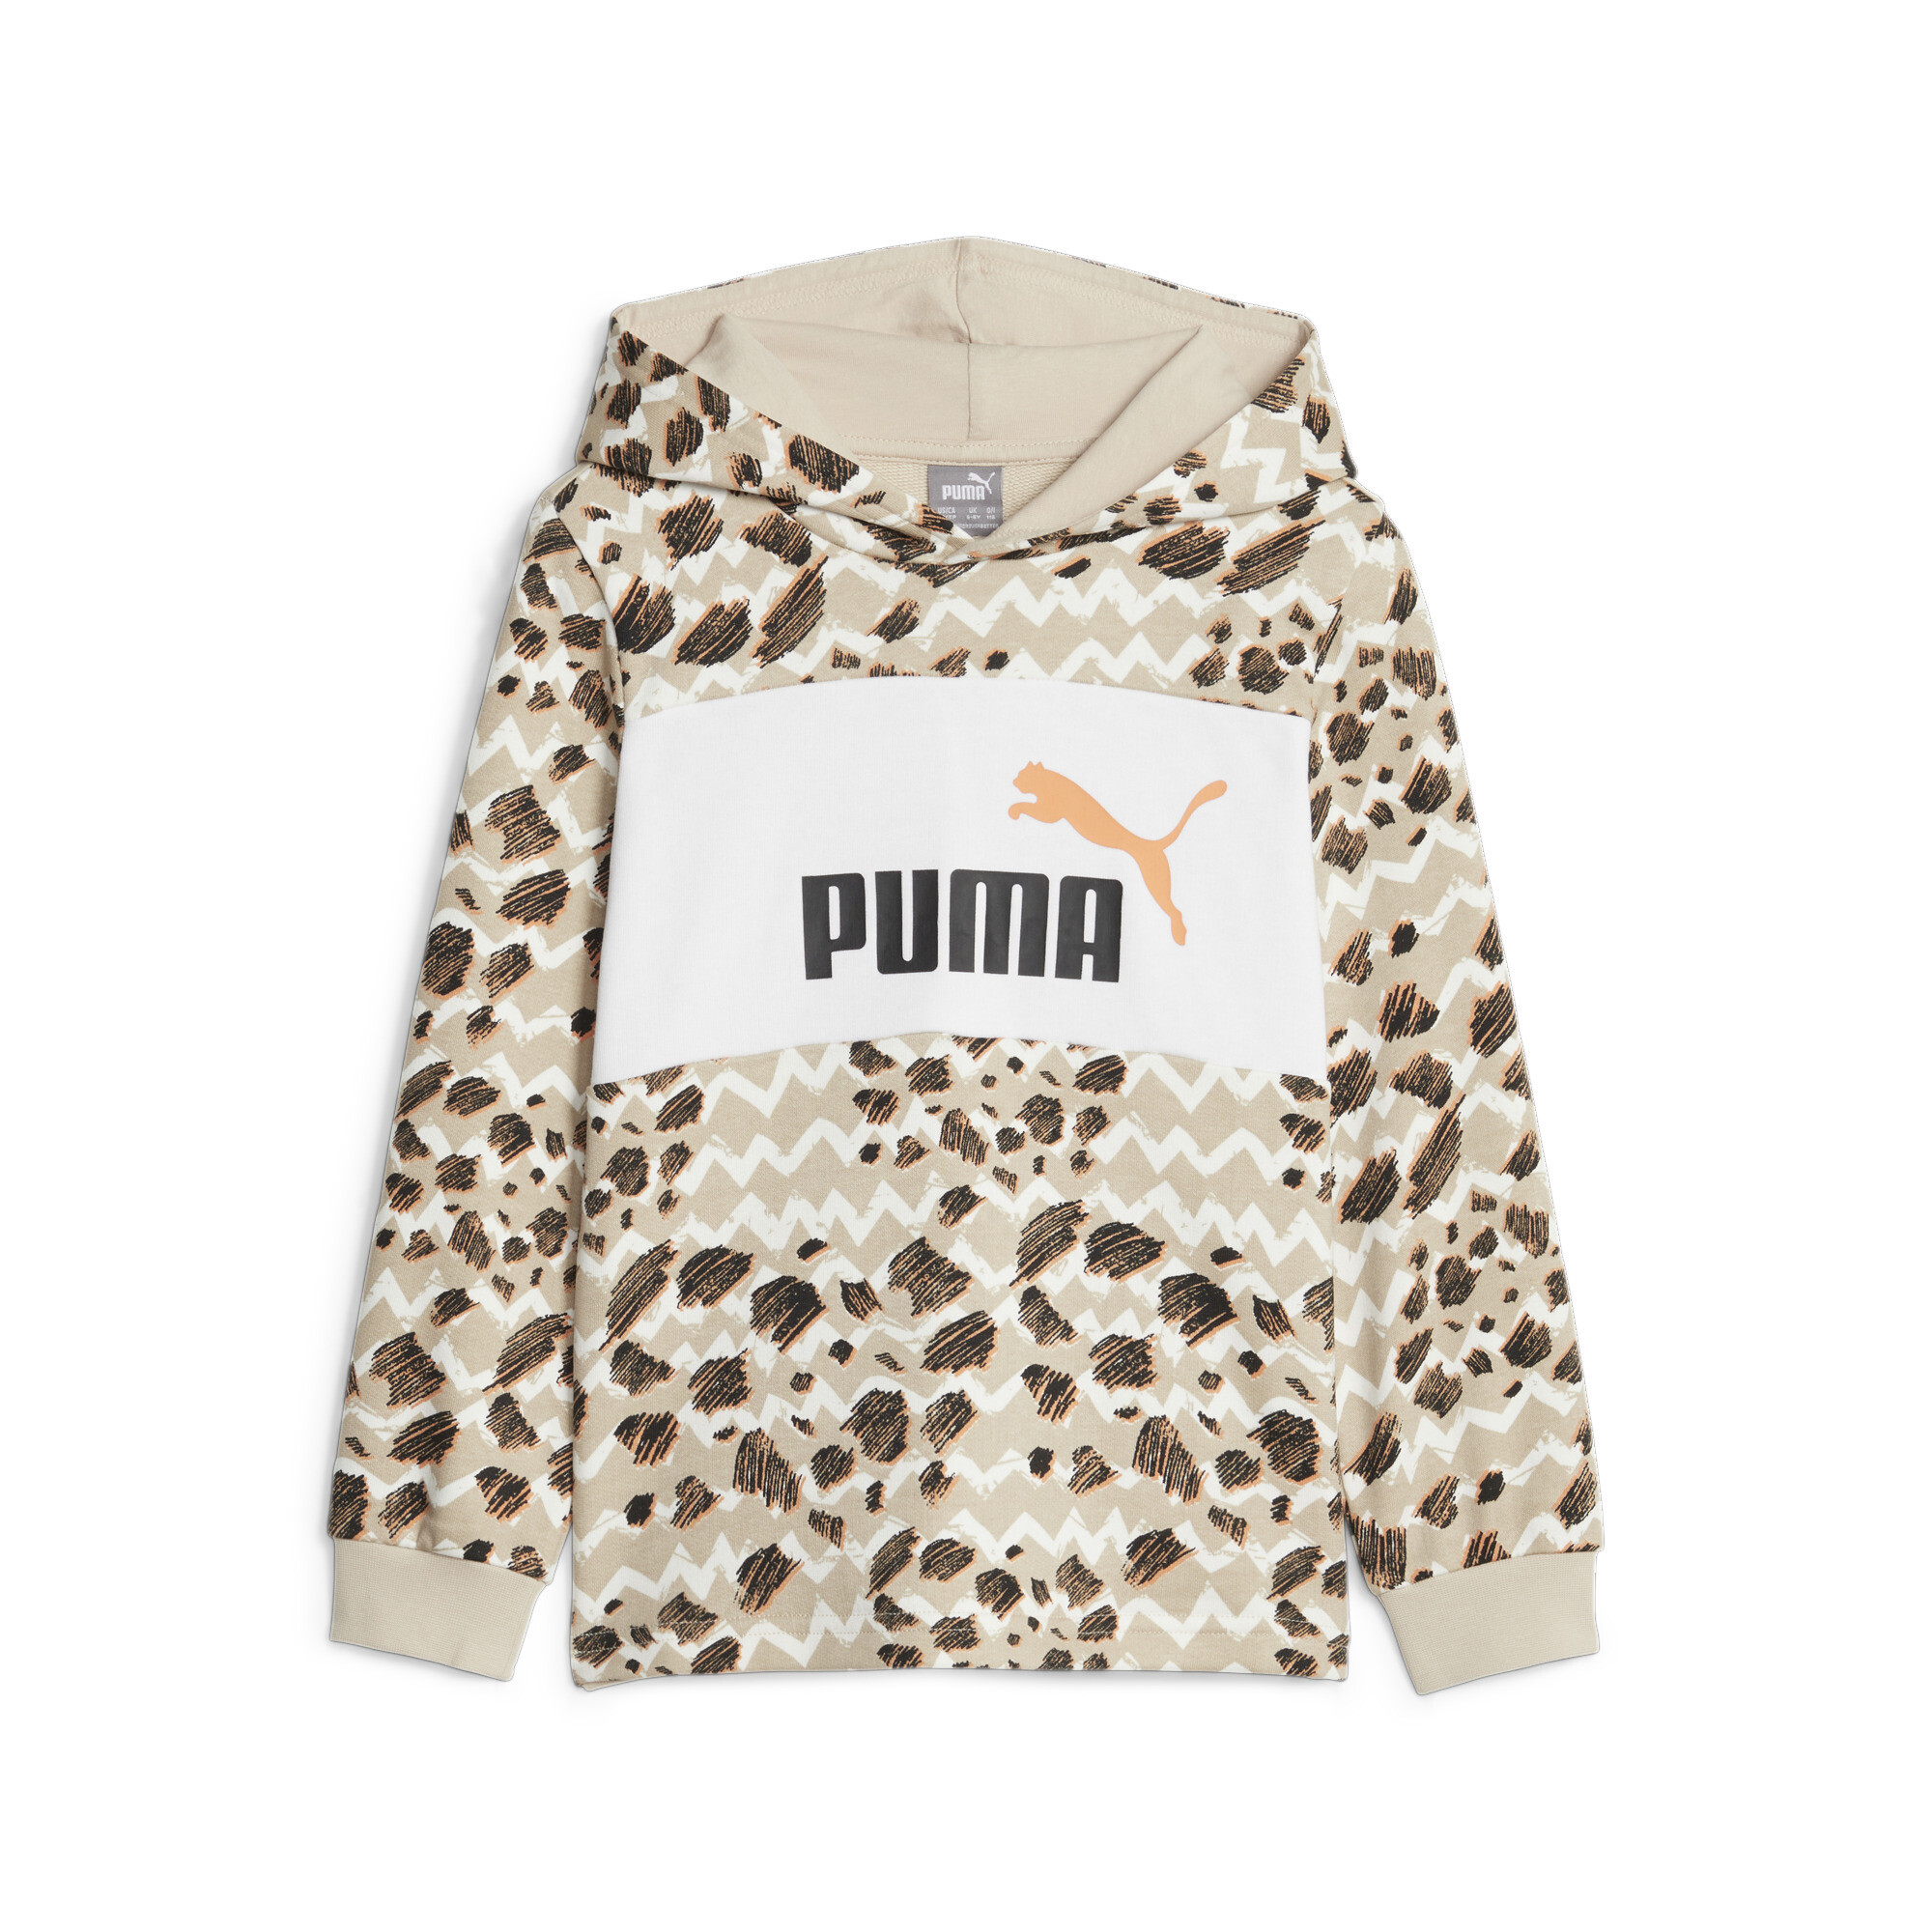 Puma Essentials Mix Match Kids' Hoodie, Beige, Size 4-5Y, Clothing